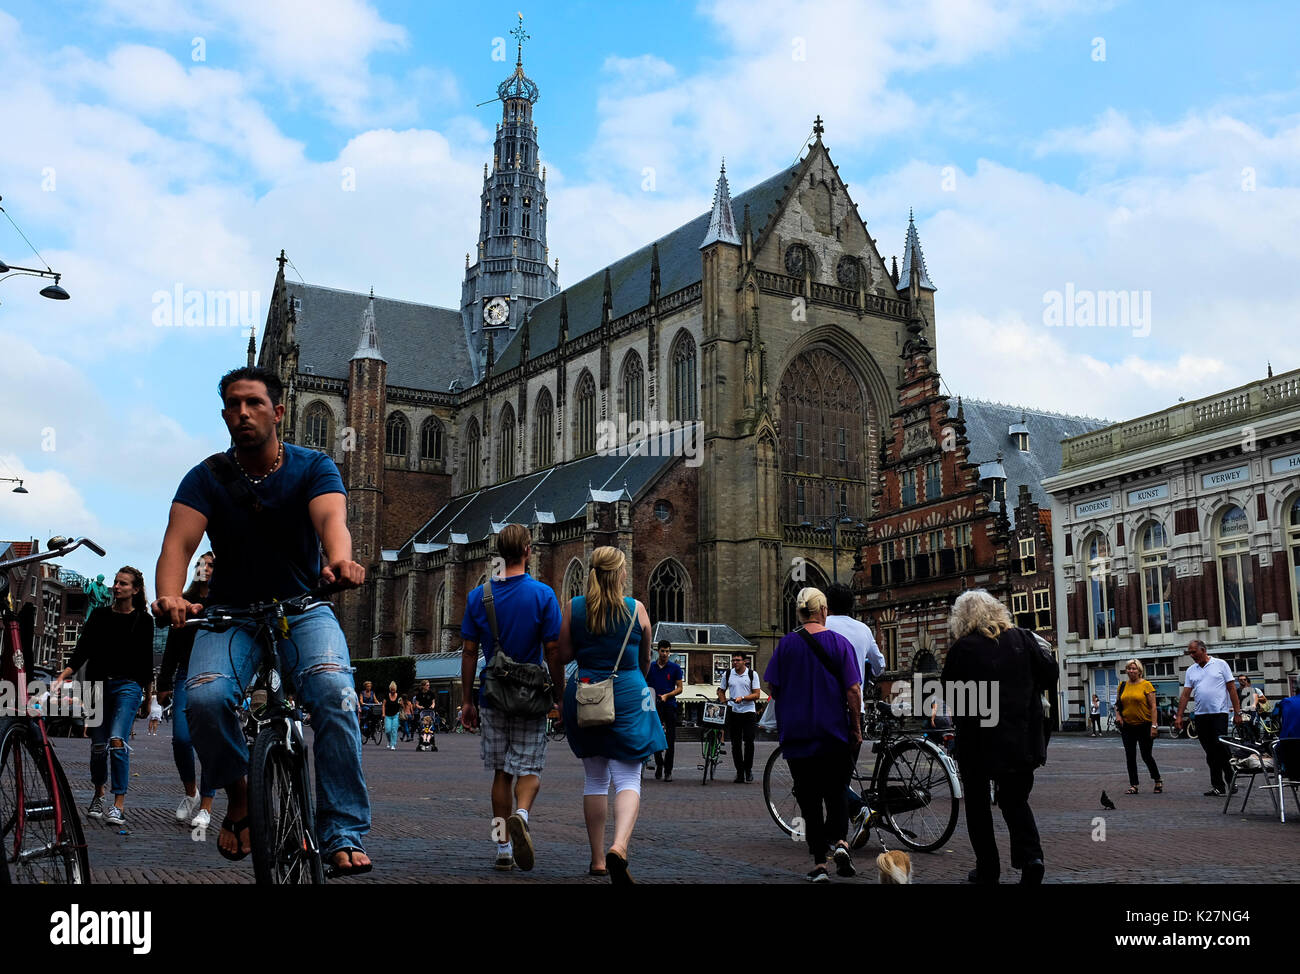 Lugares de interés general en Amsterdam, los Países Bajos, incluida la alimentación, el barrio rojo, los canales, los barcos, los ciudadanos y turistas y la marihuana en 2017. Foto de stock